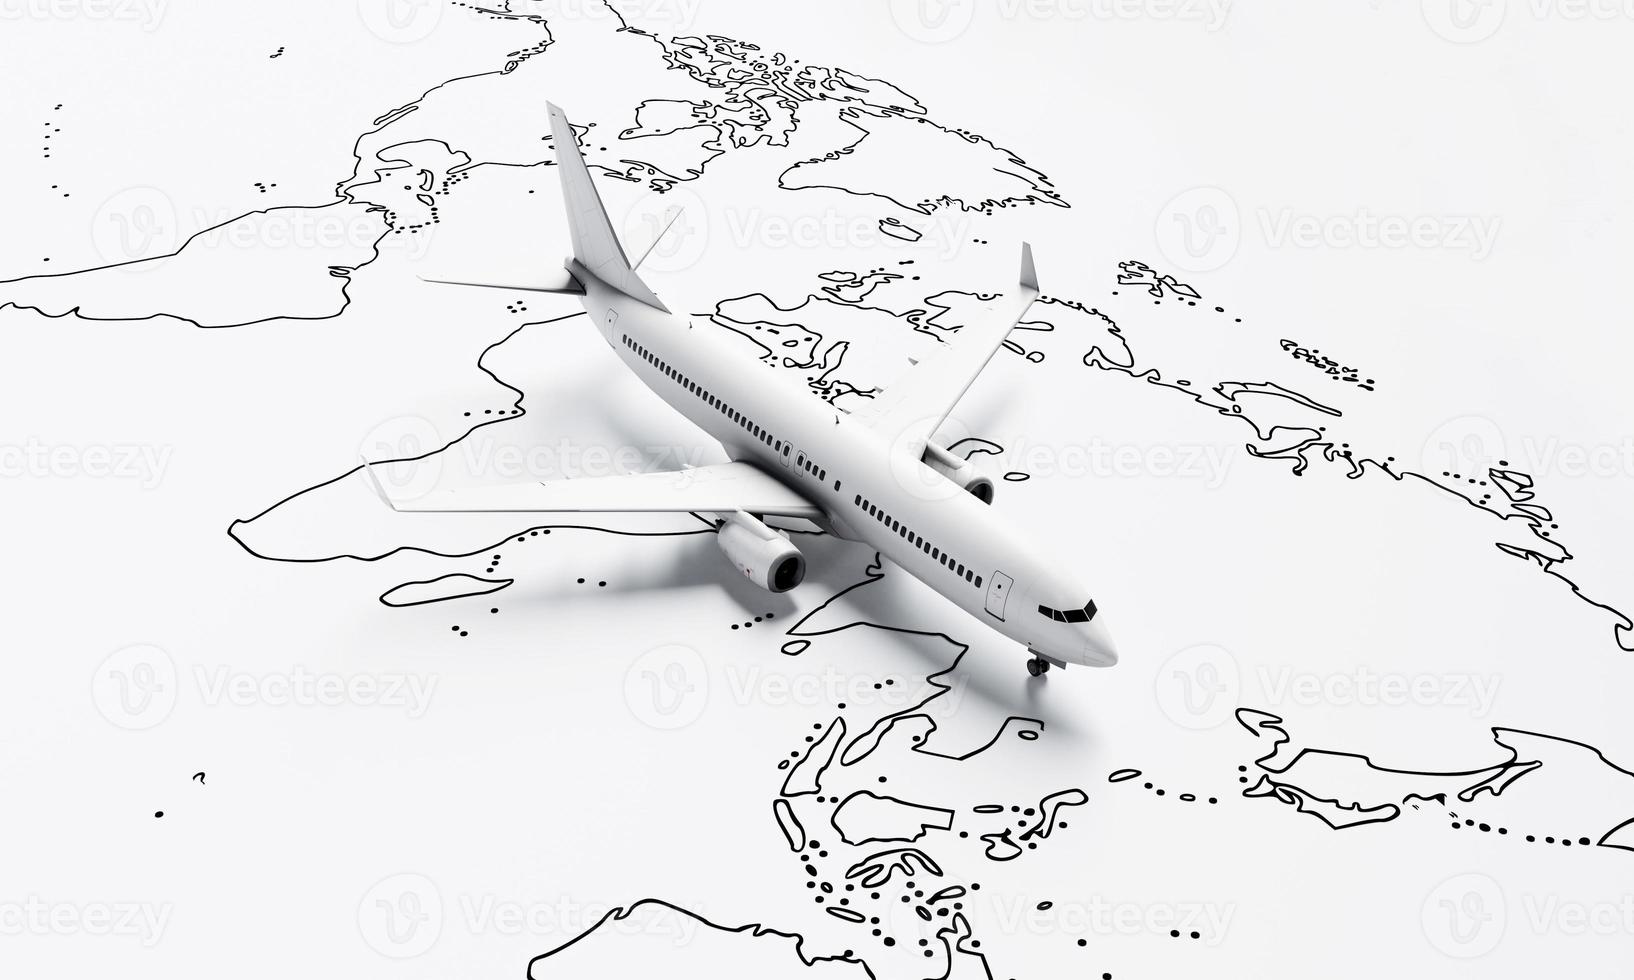 el avión vuela sobre el mapa de papel blanco del fondo de los viajes mundiales. concepto de viaje y pasión por los viajes. representación de ilustración 3d foto